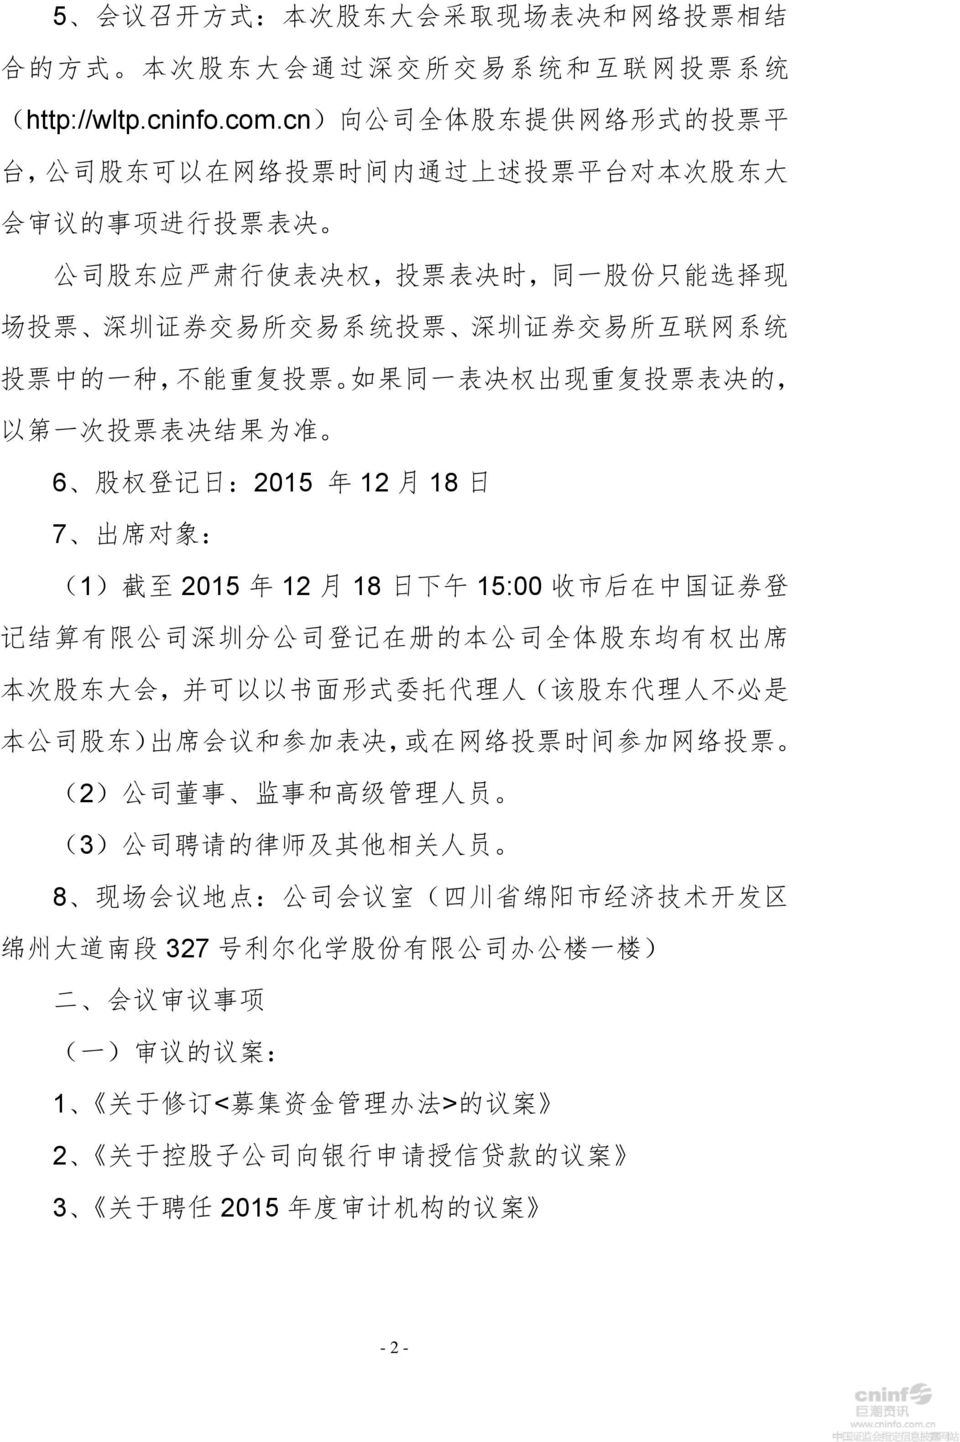 系 统 投 票 深 圳 证 券 交 易 所 互 联 网 系 统 投 票 中 的 一 种, 不 能 重 复 投 票 如 果 同 一 表 决 权 出 现 重 复 投 票 表 决 的, 以 第 一 次 投 票 表 决 结 果 为 准 6 股 权 登 记 日 :2015 年 12 月 18 日 7 出 席 对 象 : (1) 截 至 2015 年 12 月 18 日 下 午 15:00 收 市 后 在